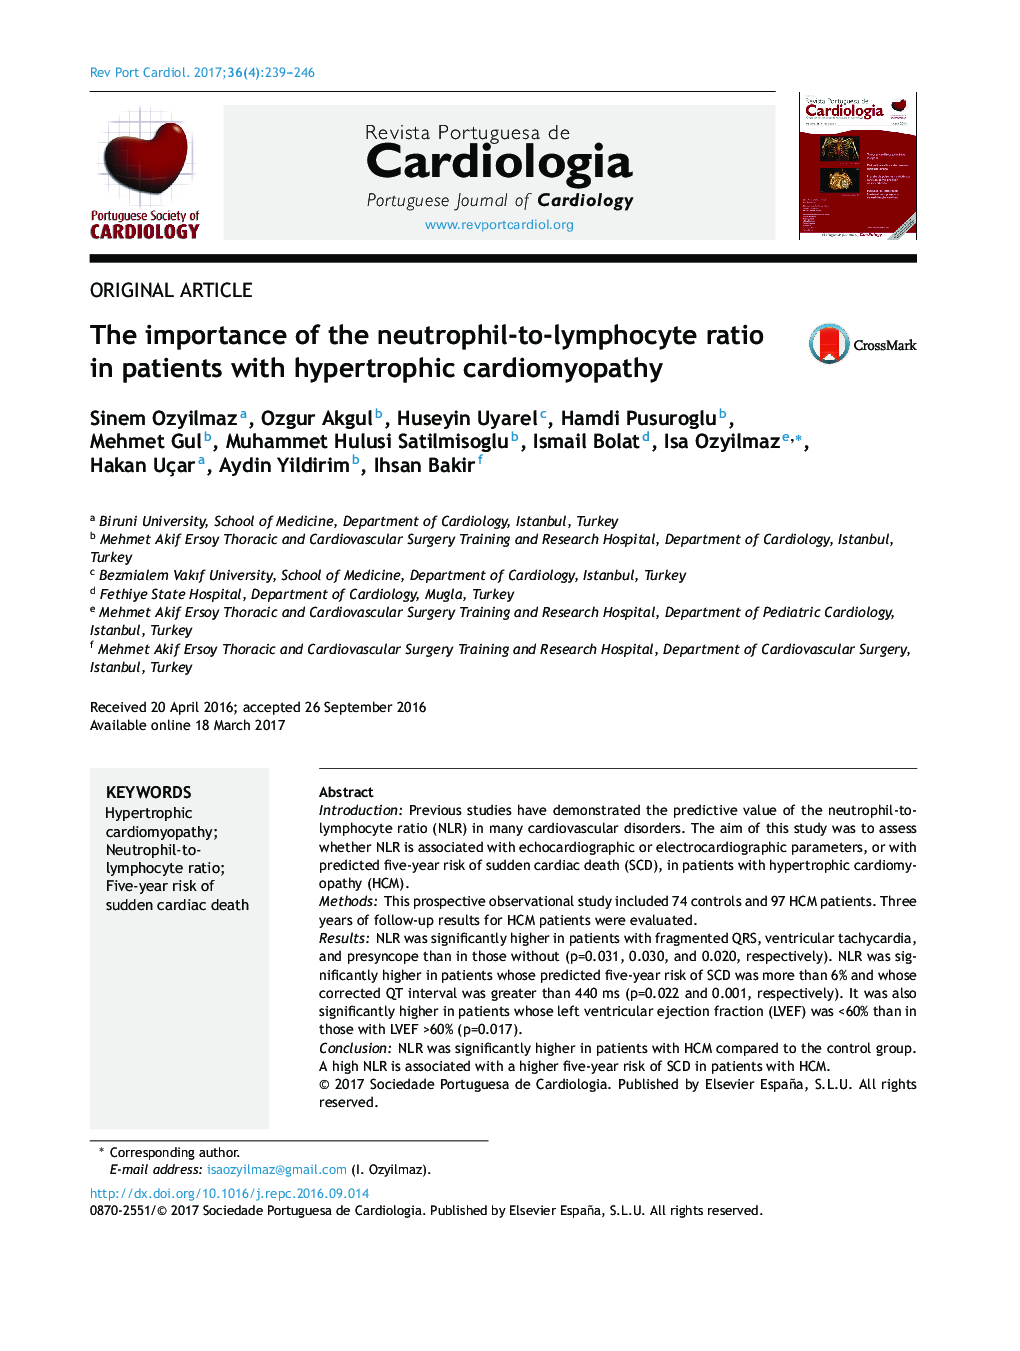 اهمیت نسبت نوتروفیل به لنفوسیت در بیماران مبتلا به کراتومیوپاتی هیپرتروفی 